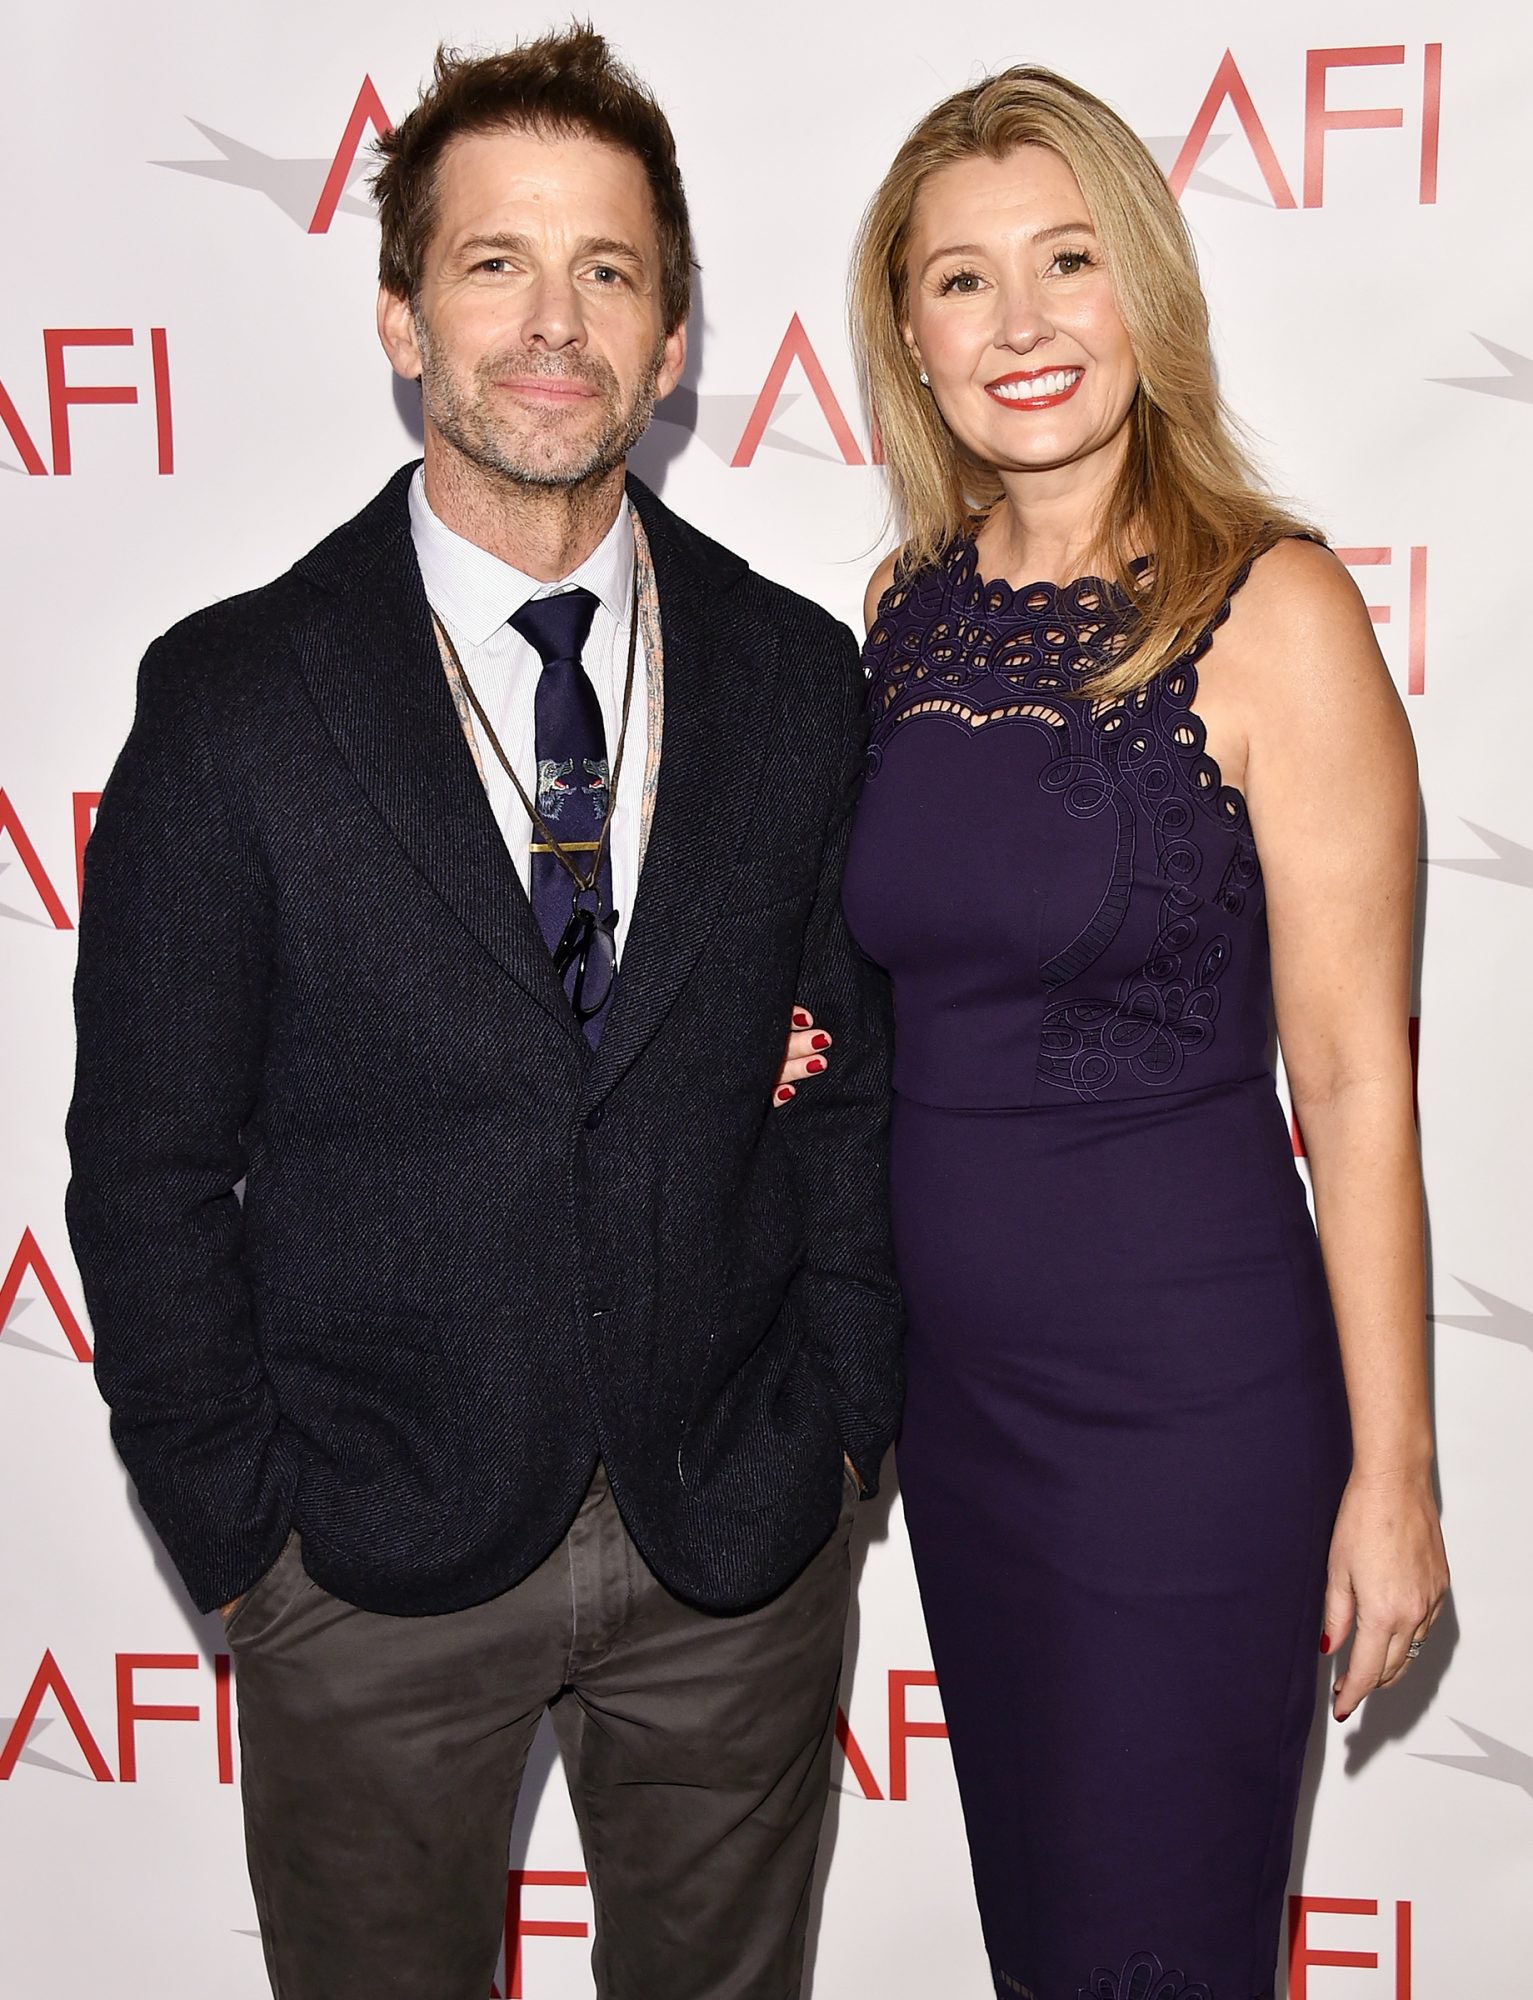 Zack Snyder alongside his beloved wife Deborah Snyder